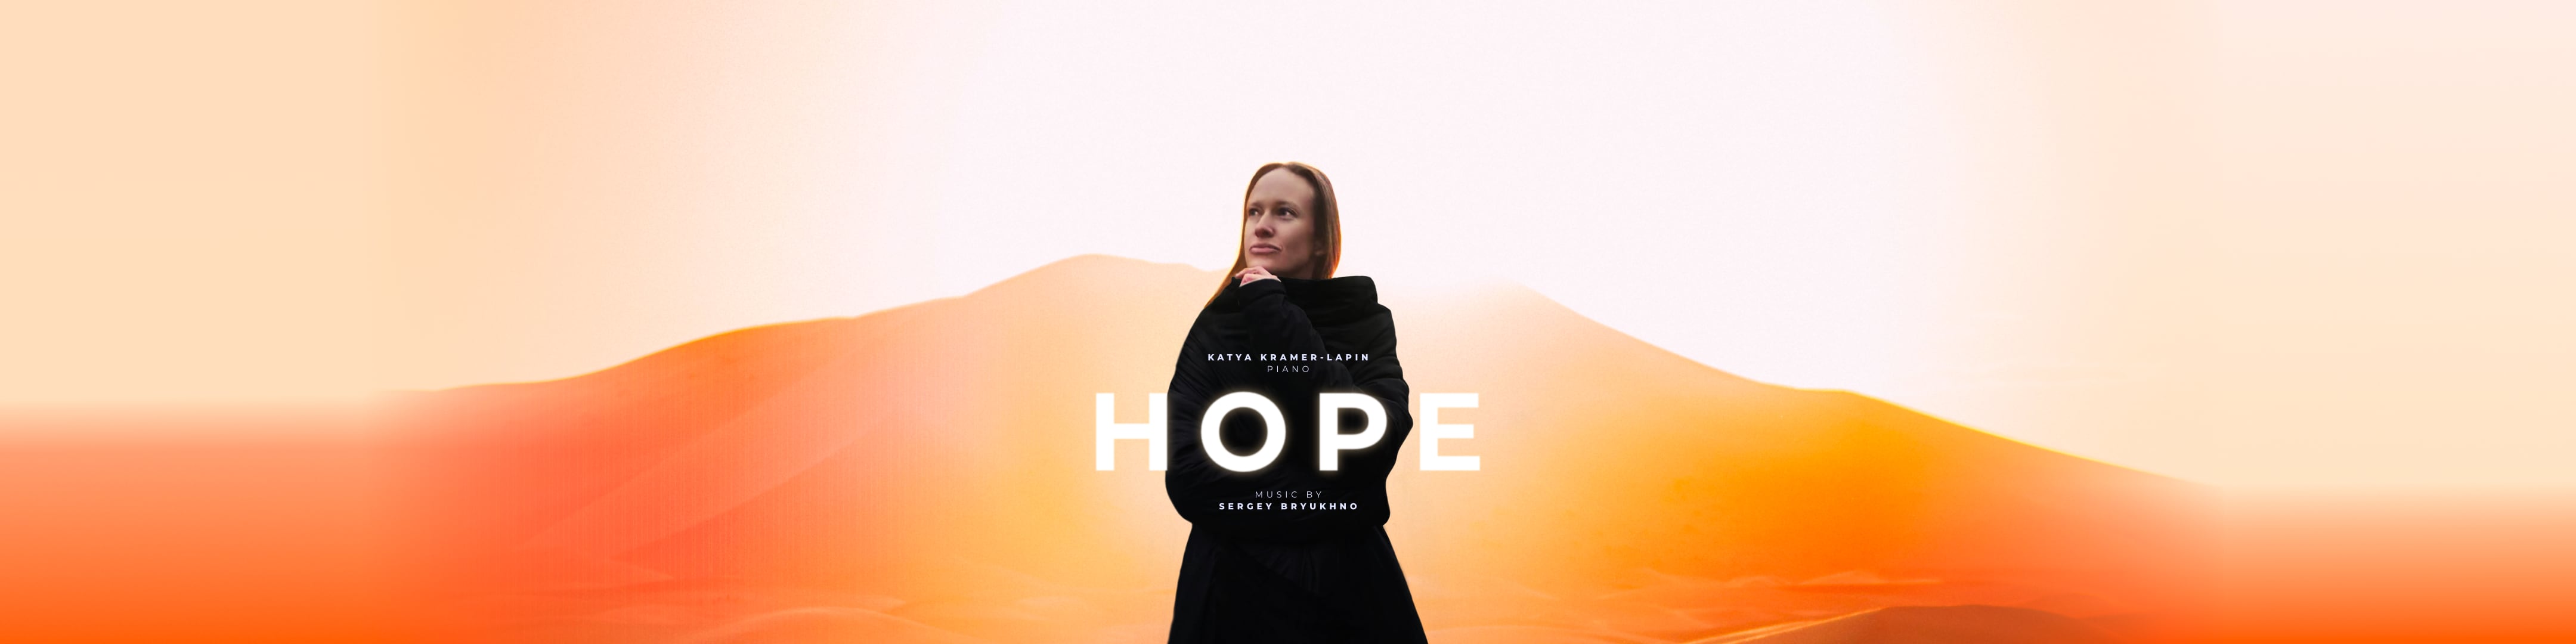 Hope composed by Sergey Bryukhno